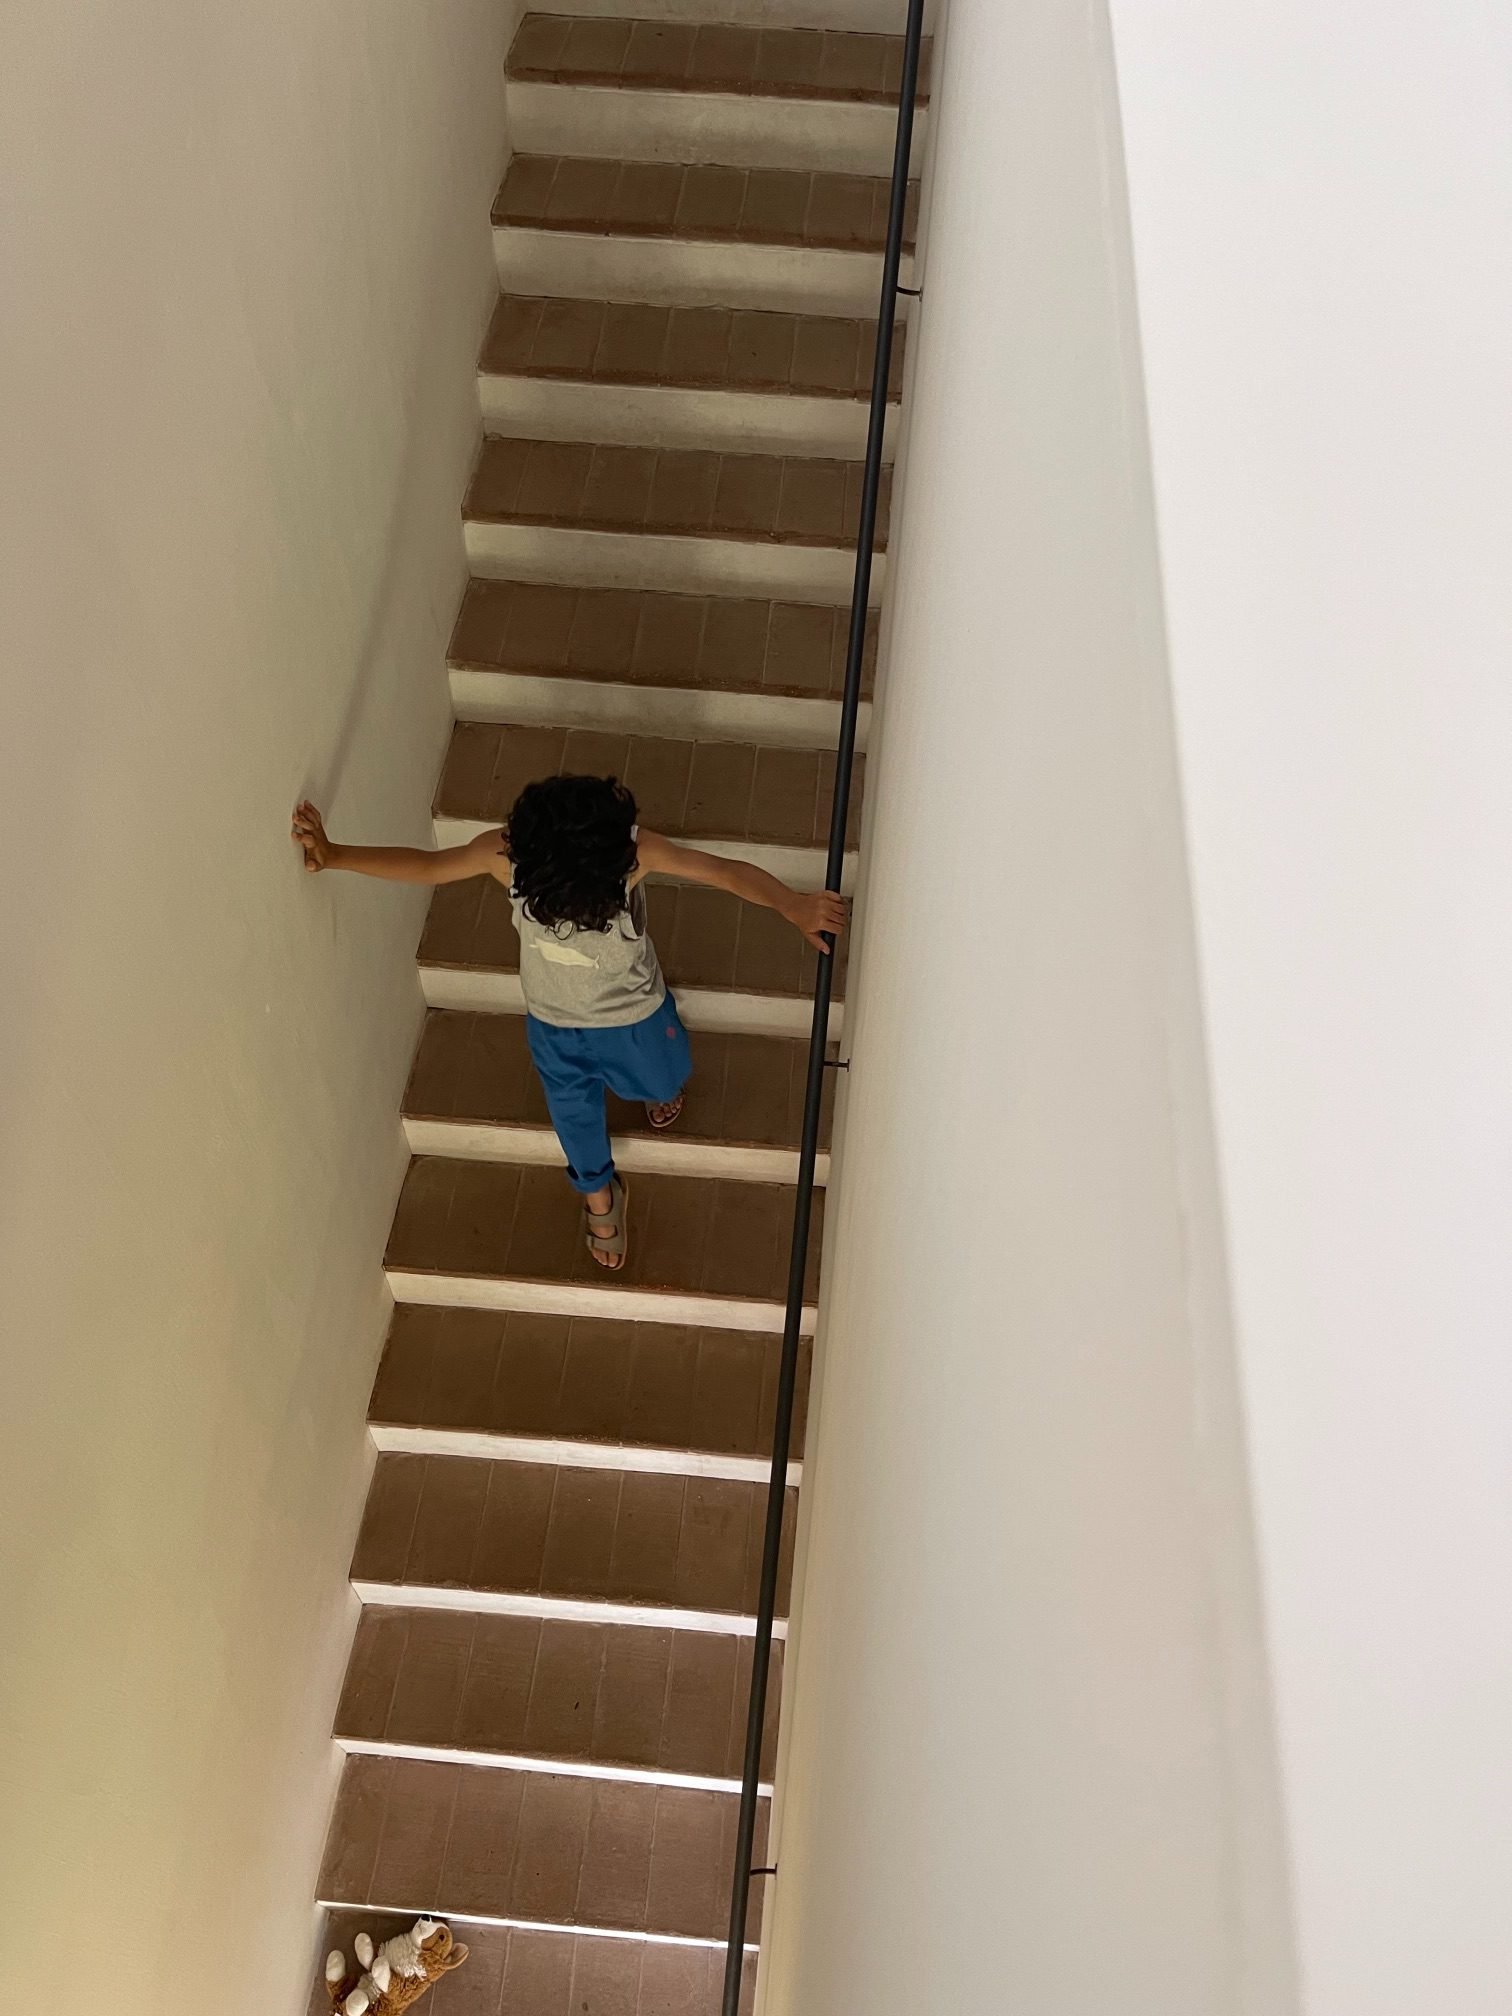 TheAlentejoMonte_Child_Stairs